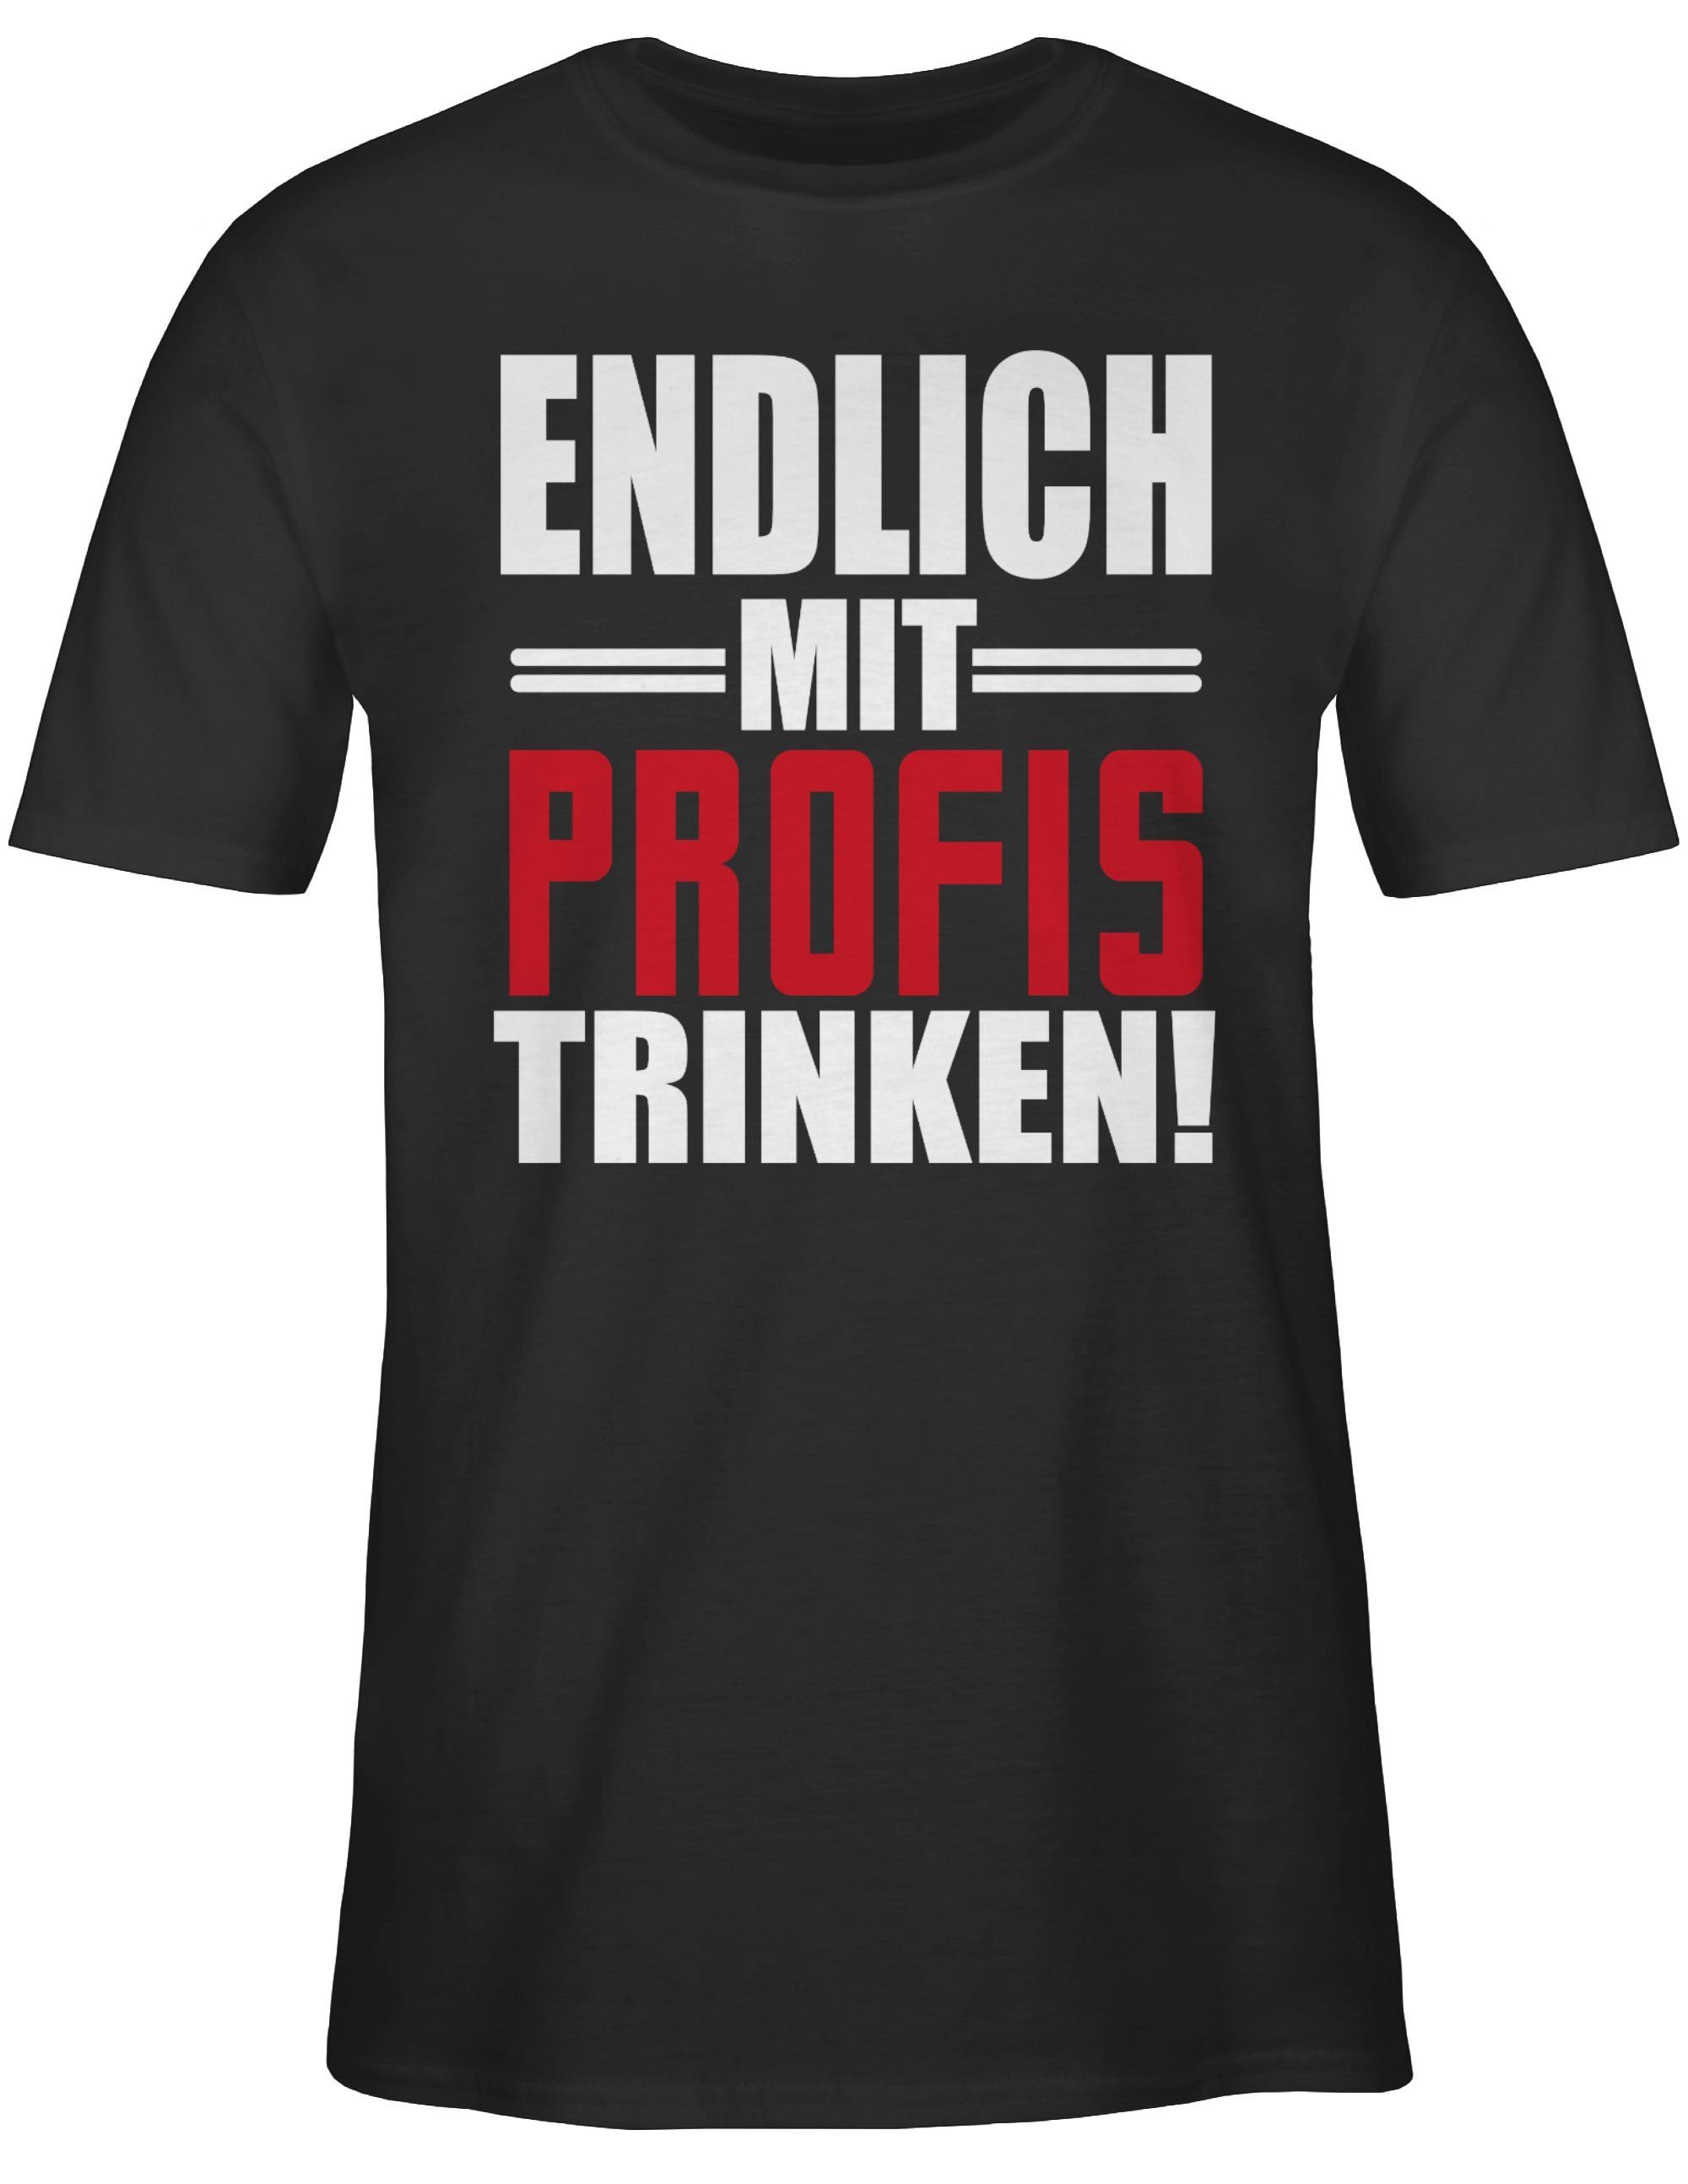 Shirtracer T-Shirt Endlich mit weiß/rot trinken 1 Schwarz Alkohol Herren Party & - Profis